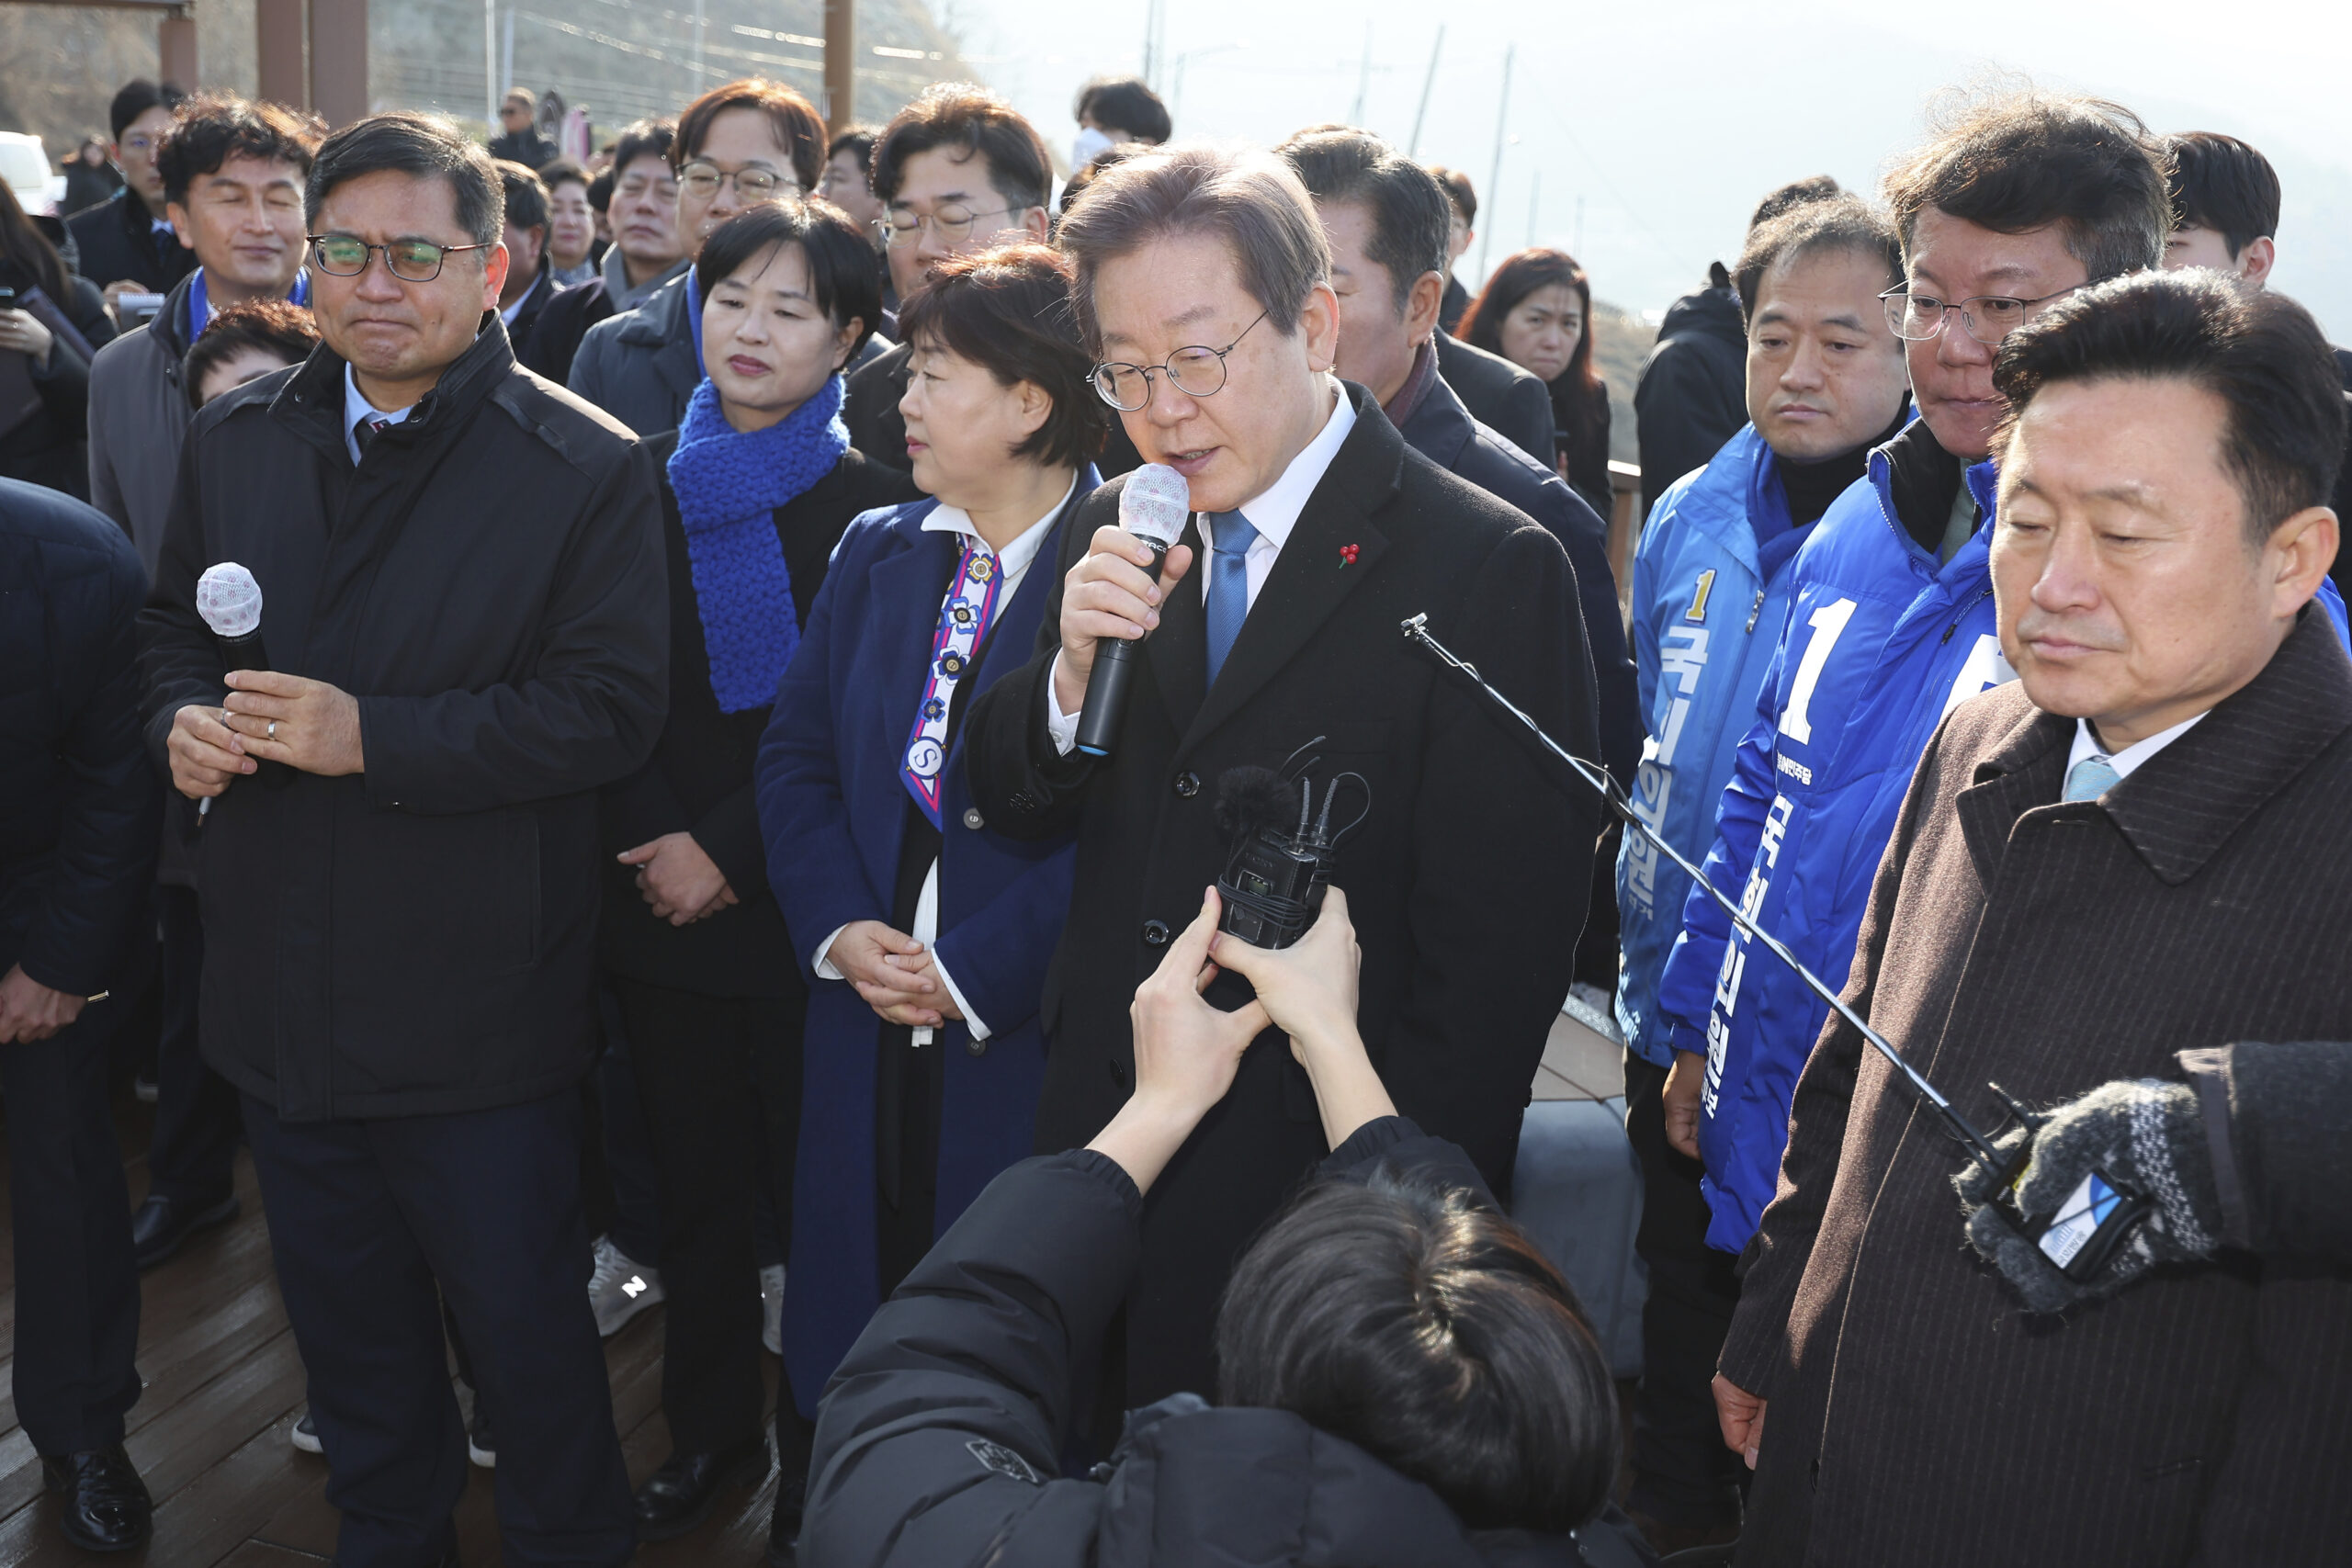 Südkoreas Oppositionschef Lee Jae Myung wurde während eines öffentlichen Auftritts attackiert.